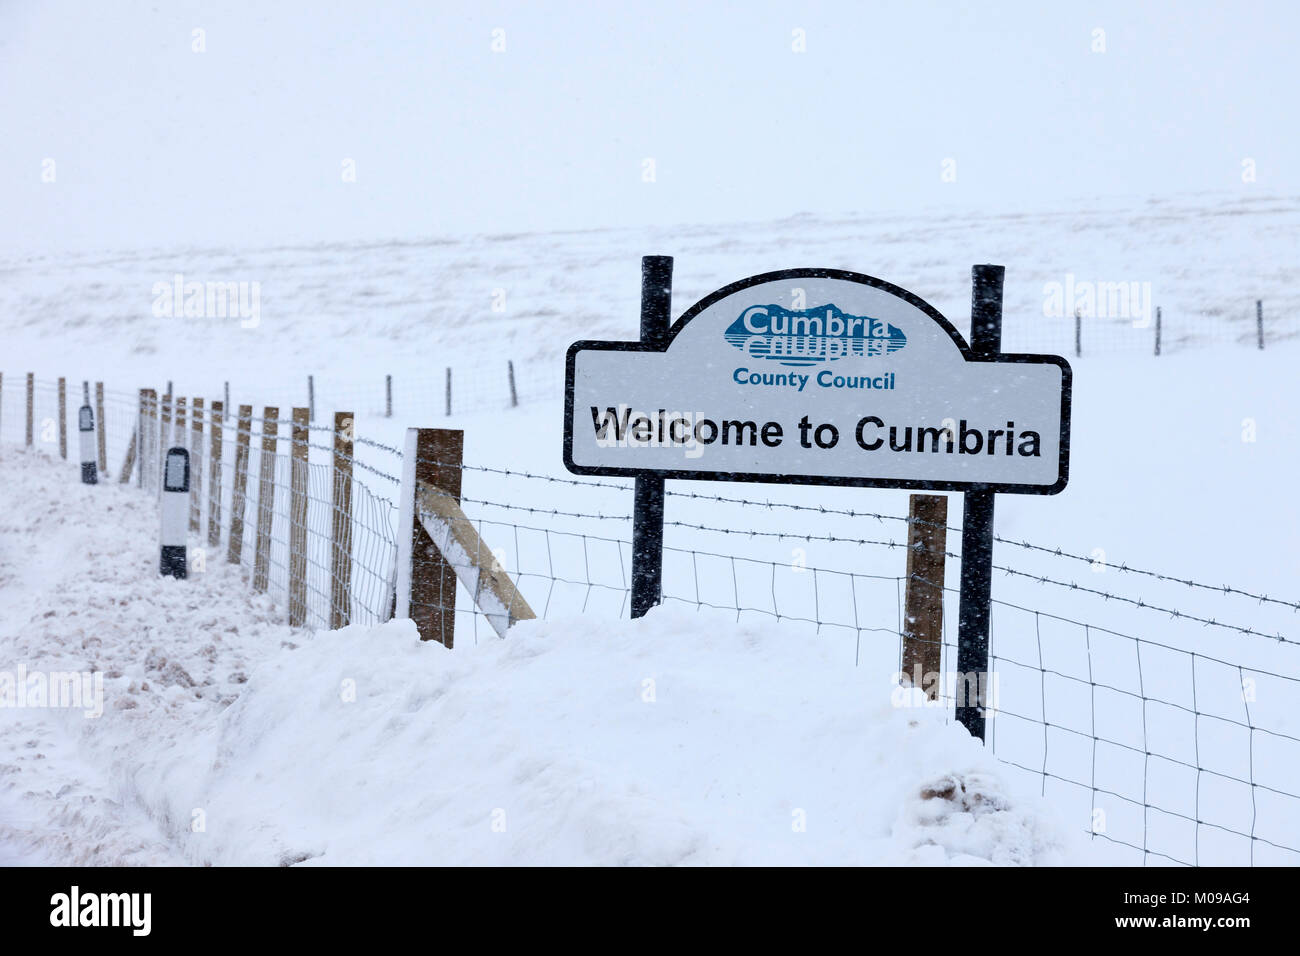 B6277 Teesdale, Cumbria, County Durham/Border UK. Vendredi 19 janvier 2018. Météo britannique. D'autres chutes de neige et la neige est toujours sur certaines des routes de haut niveau dans le Nord de l'Angleterre cet après-midi. Conditions de conduite sur la B6277 entre Middleton-in-Teesdale et Alston sont toujours dangereux. Crédit : David Forster/Alamy Live News Banque D'Images